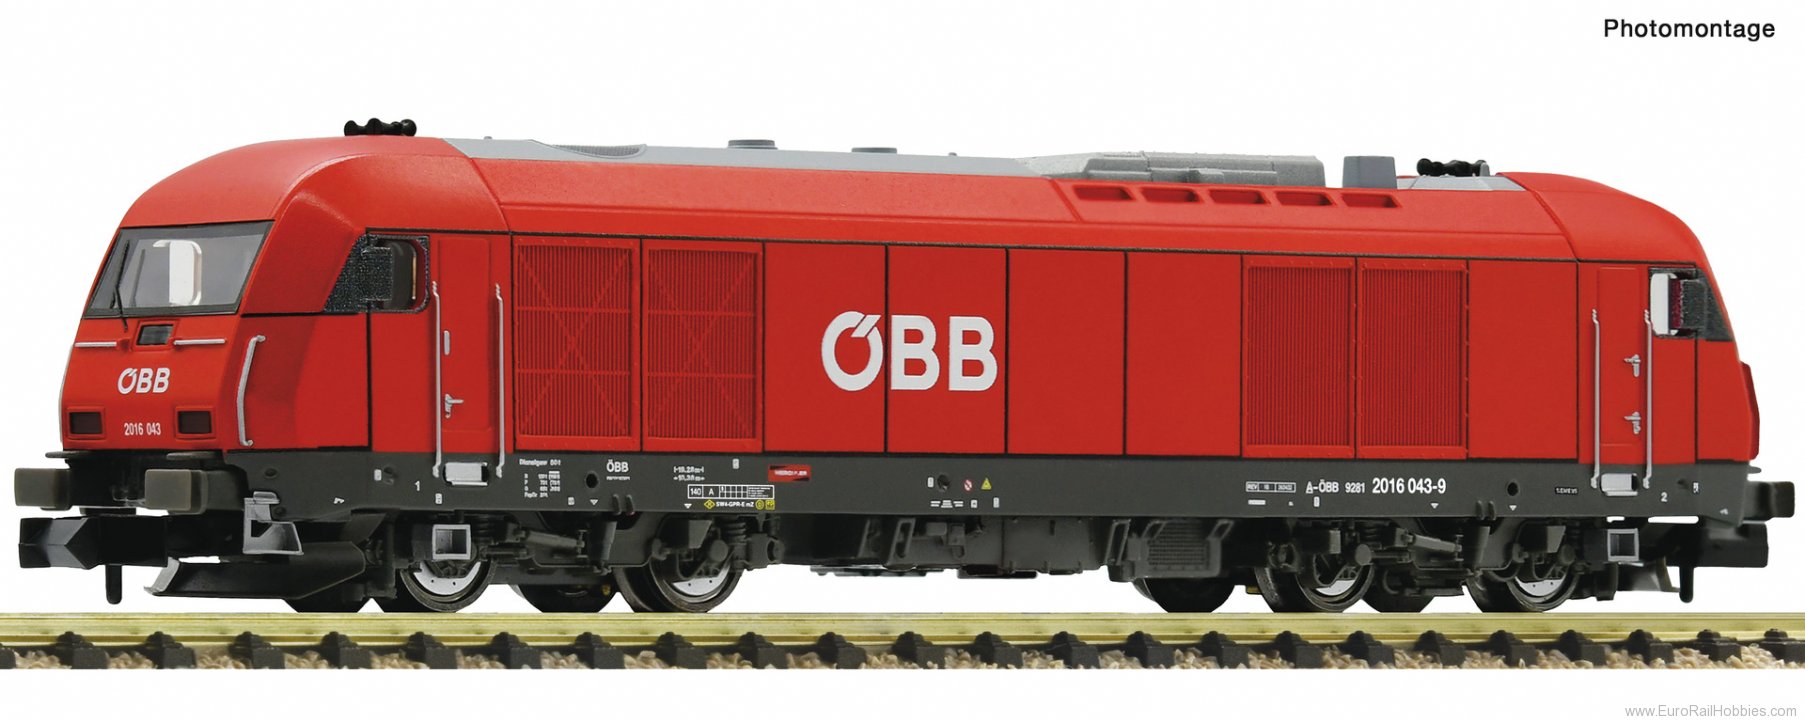 Fleischmann 7370012 Diesel locomotive 2016 043-9, ÃBB (Digital